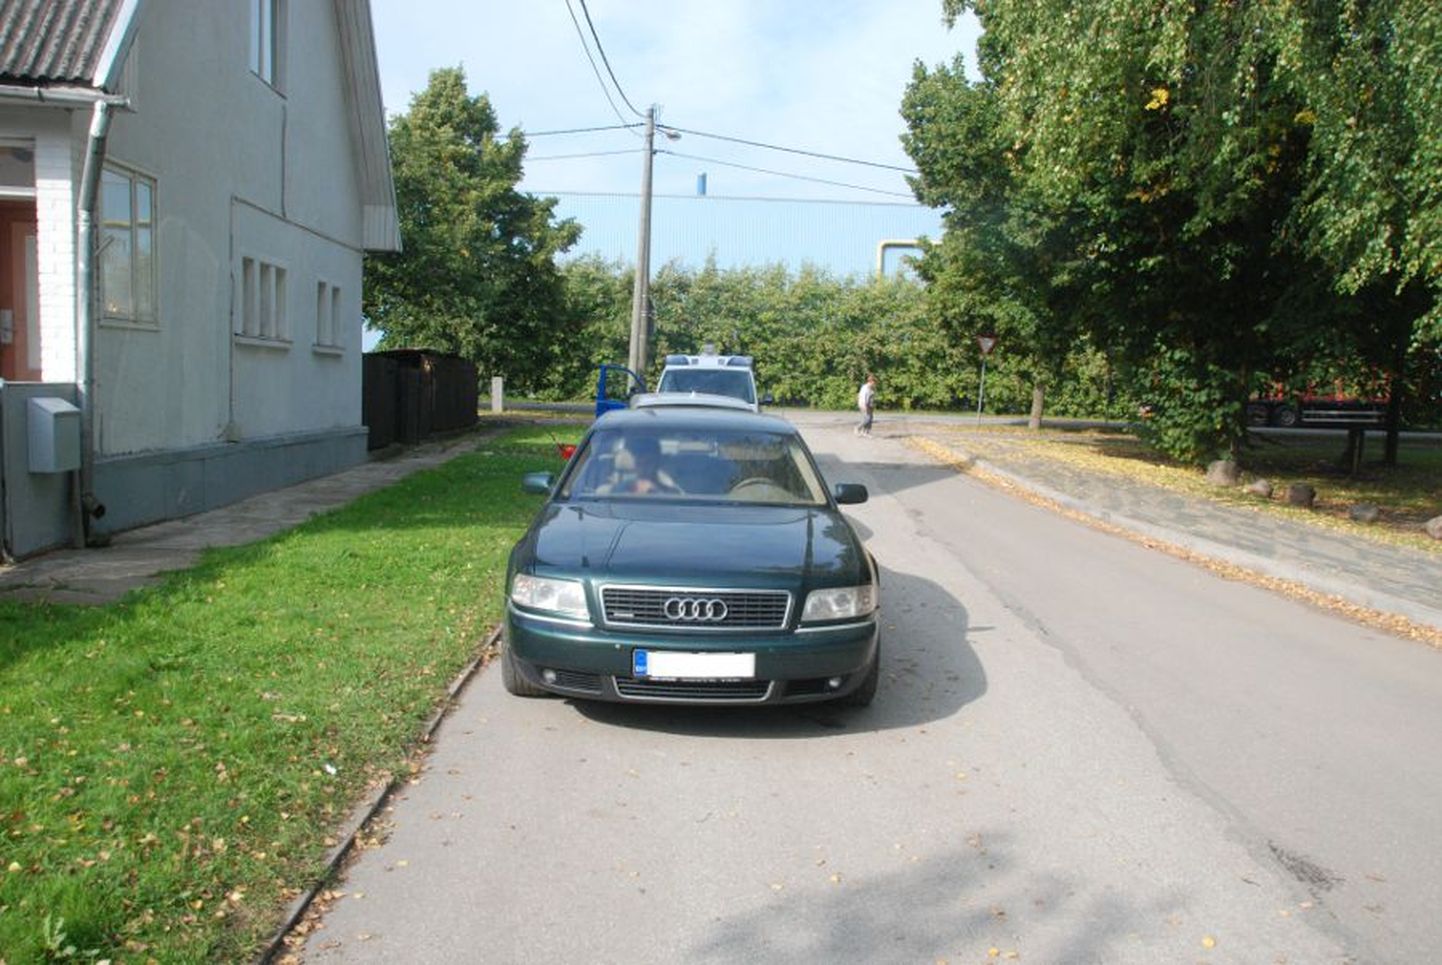 Tundmatu autojuht sõitis Tartus Põllu tänaval otsa Audile.